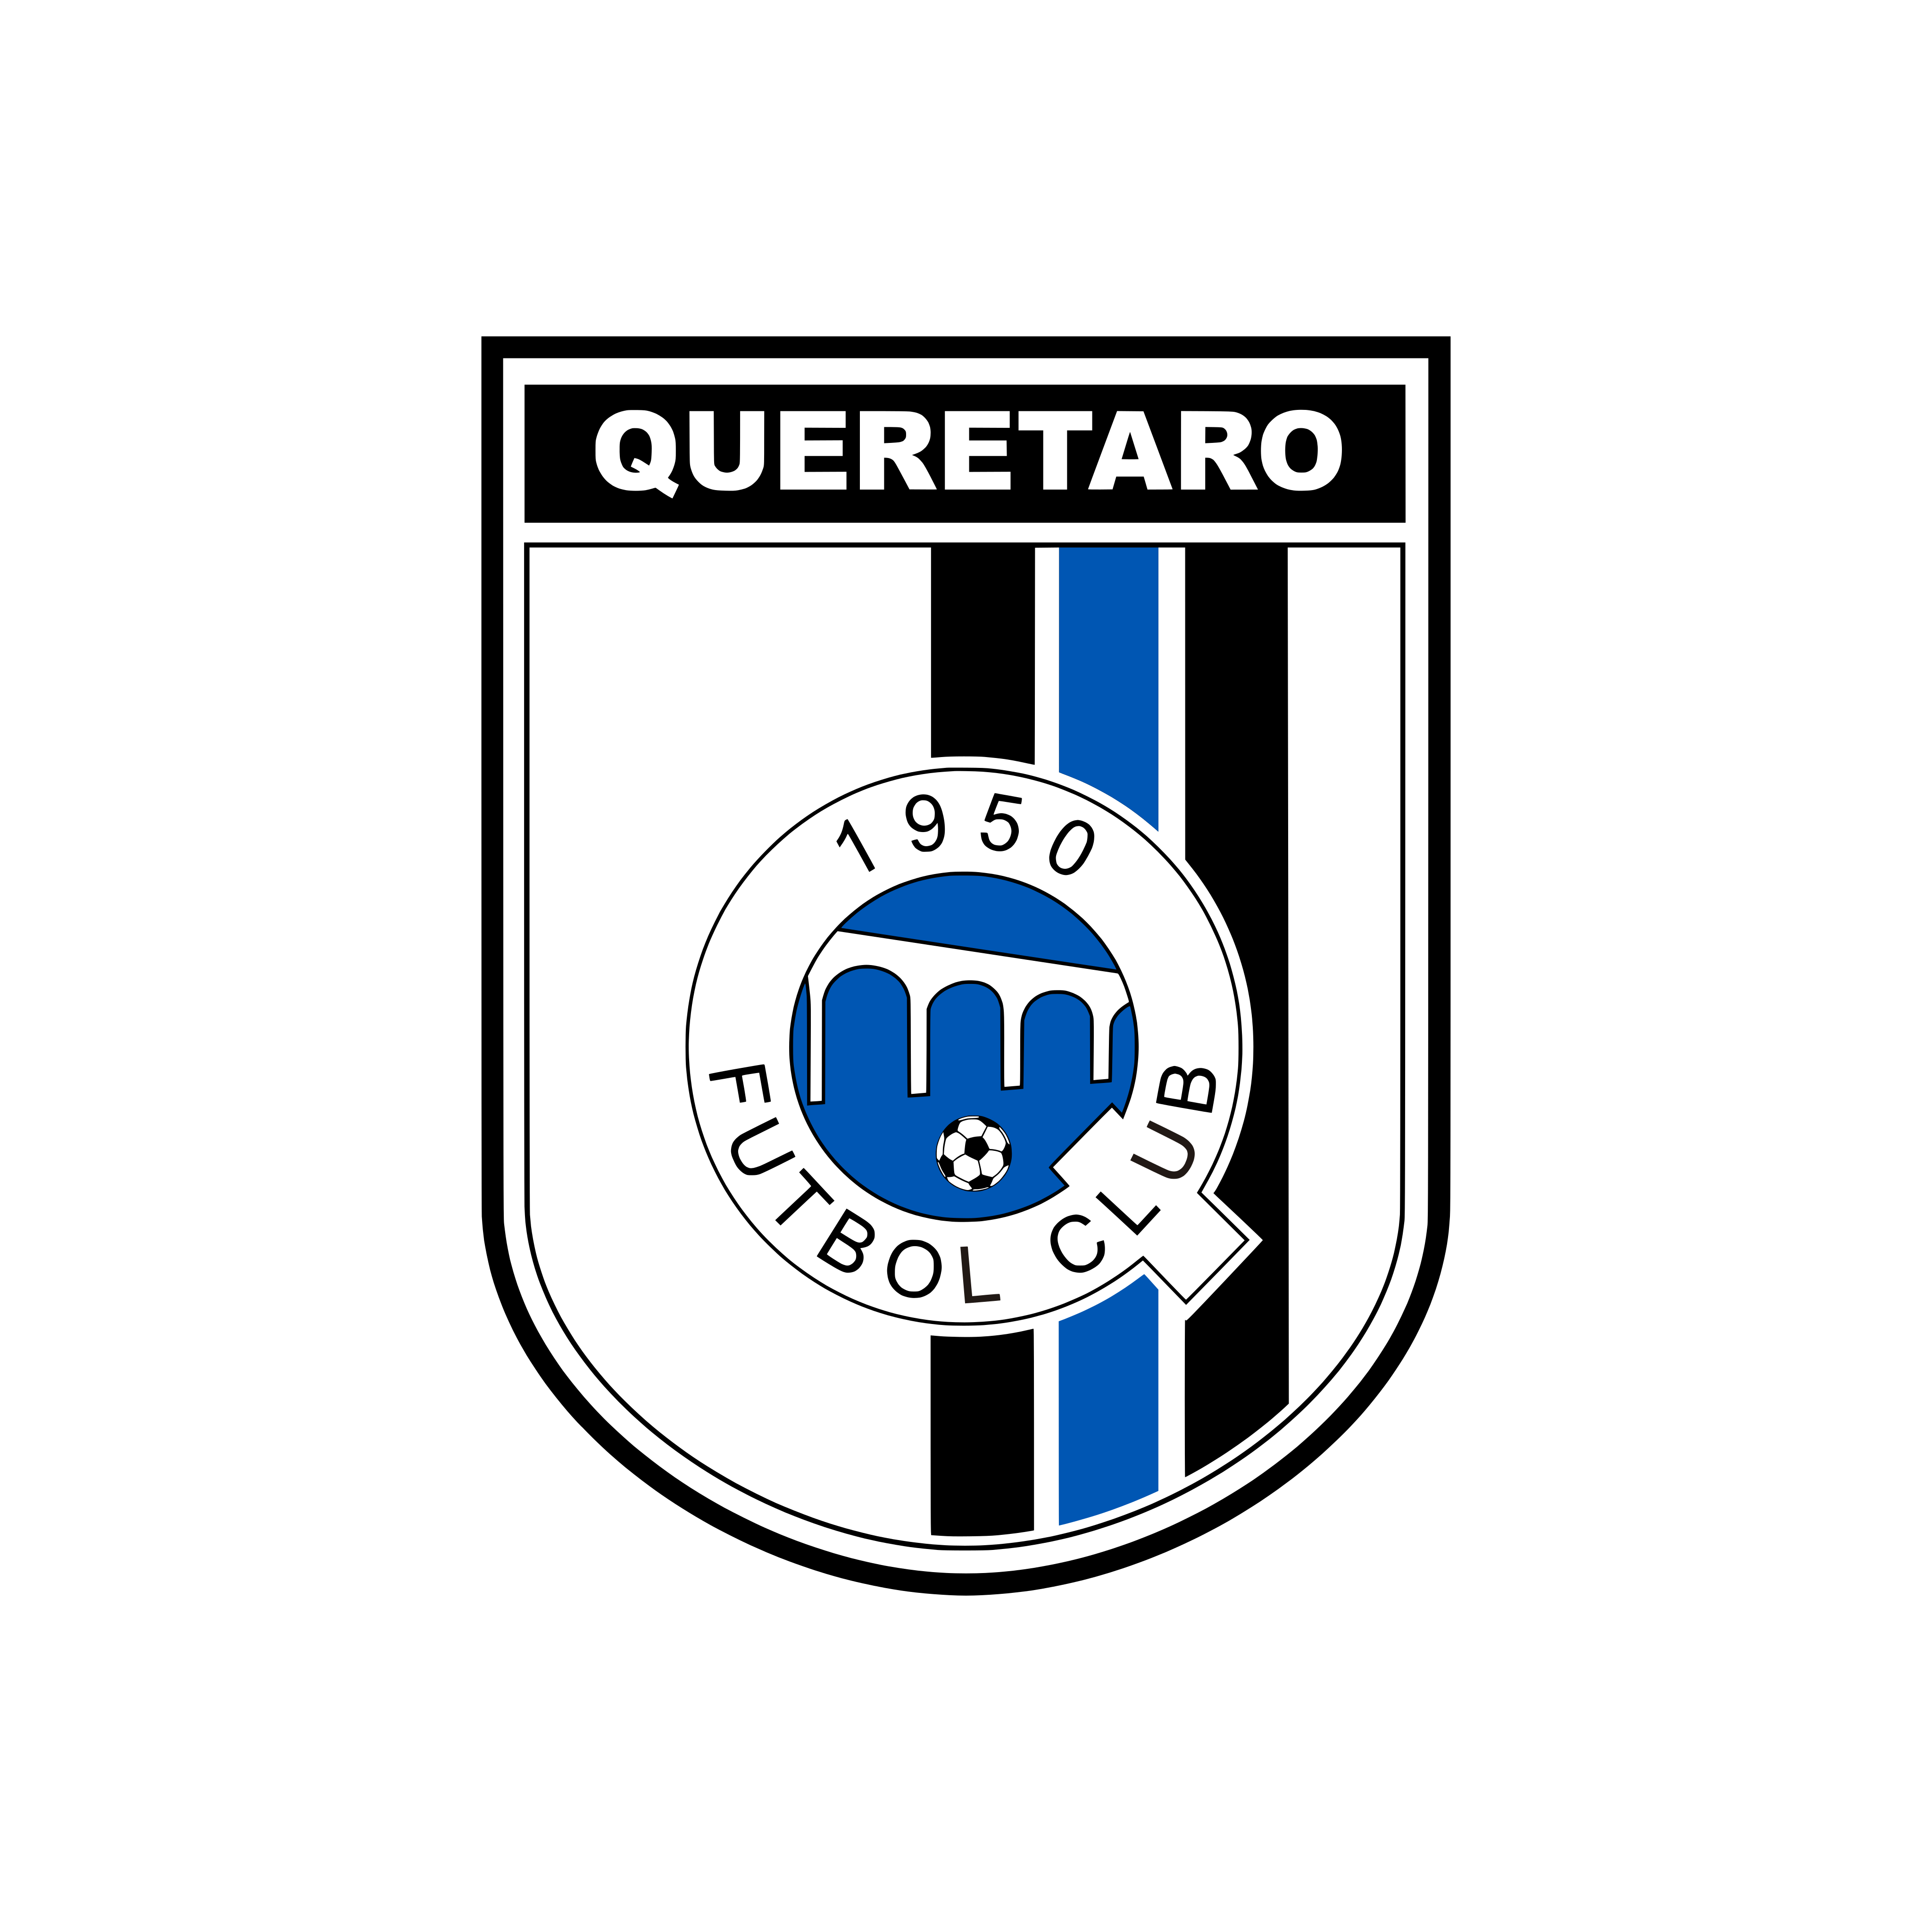 queretaro fc logo 0 - Querétaro FC Logo